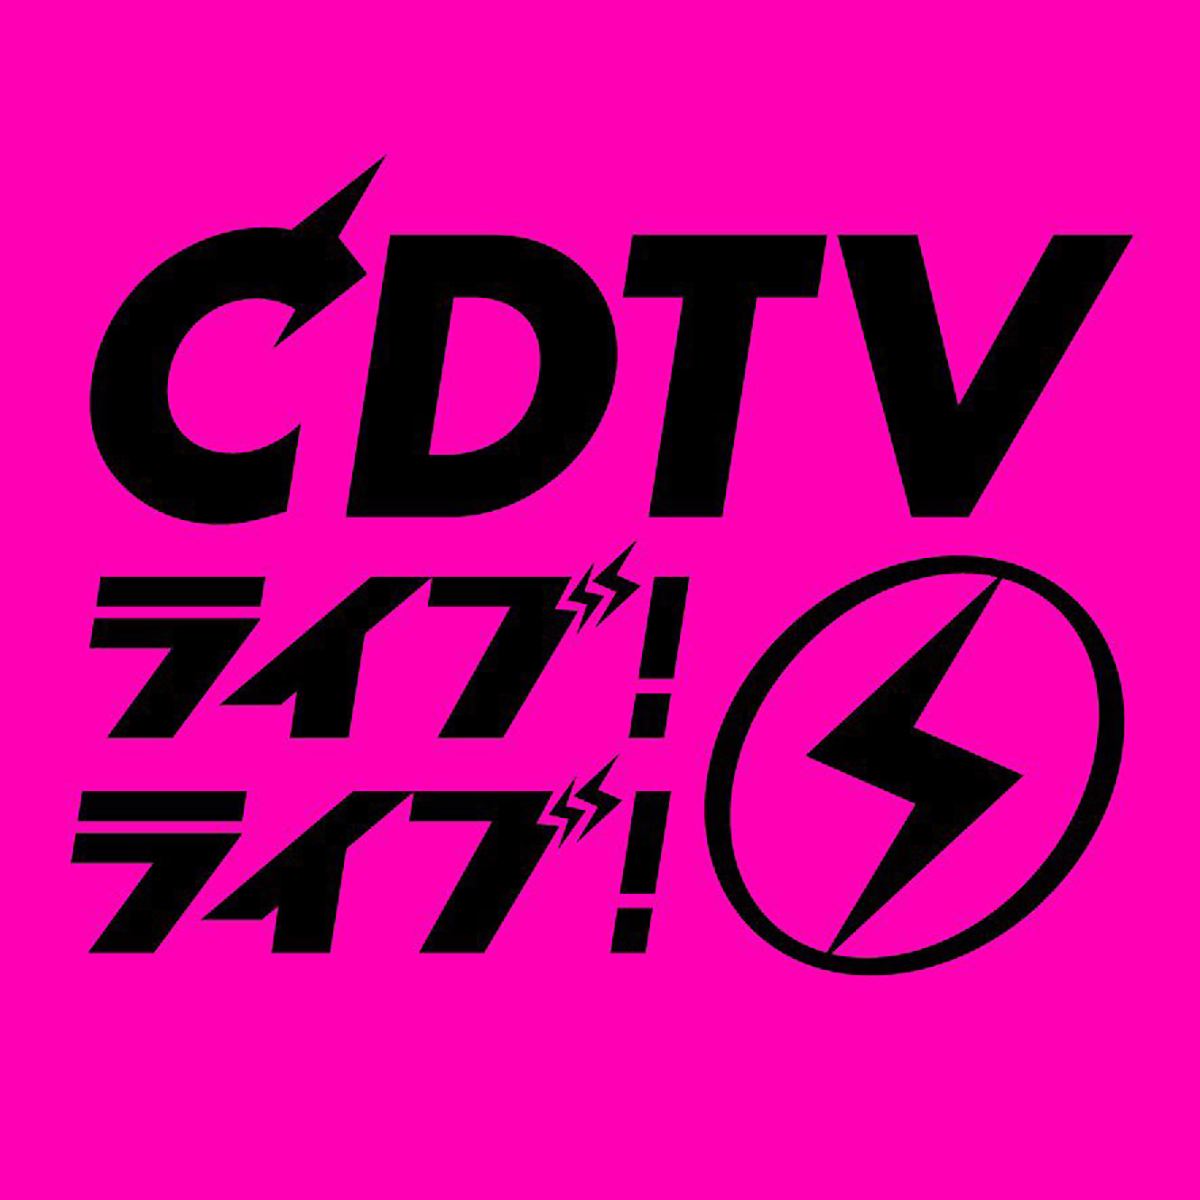 『CDTVライブ!ライブ!』のロゴ